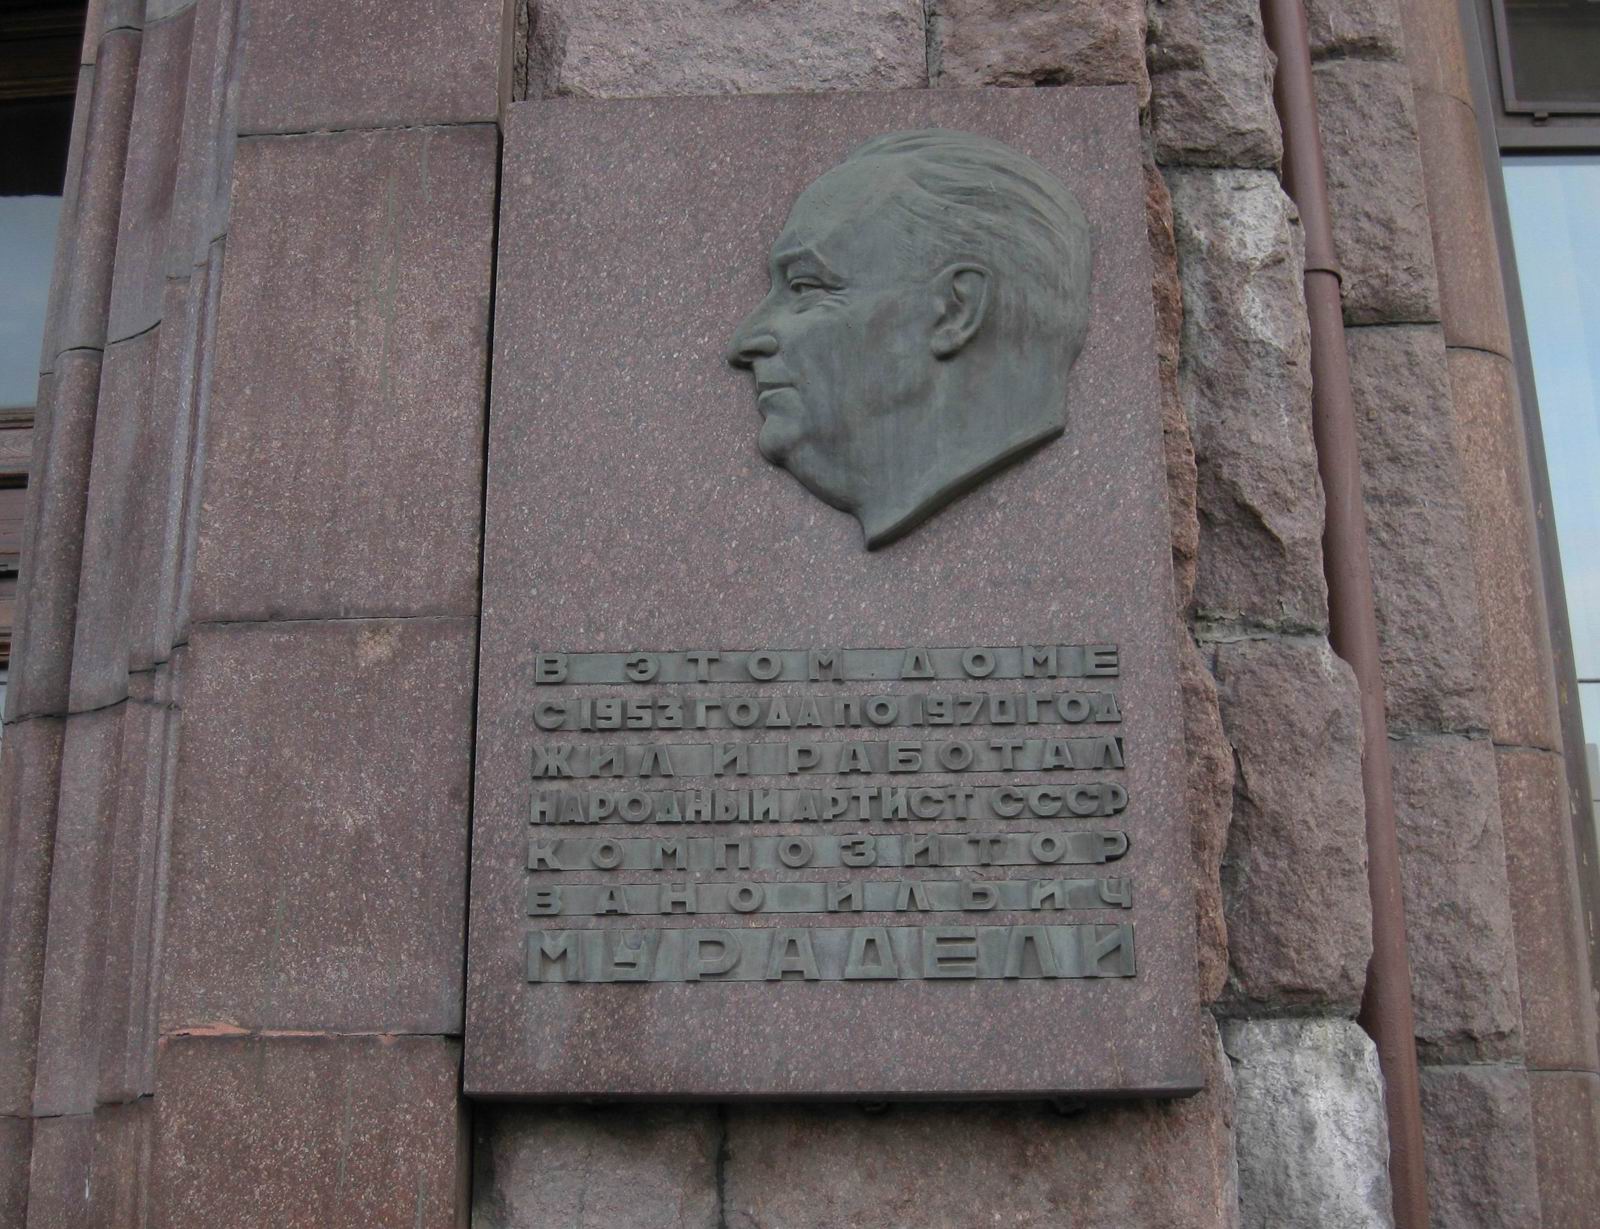 Мемориальная доска Мурадели В.И. (1908–1970), ск. Н.Е.Саркисов, на Котельнической набережной, дом 1/15, открыта 6.4.1972.